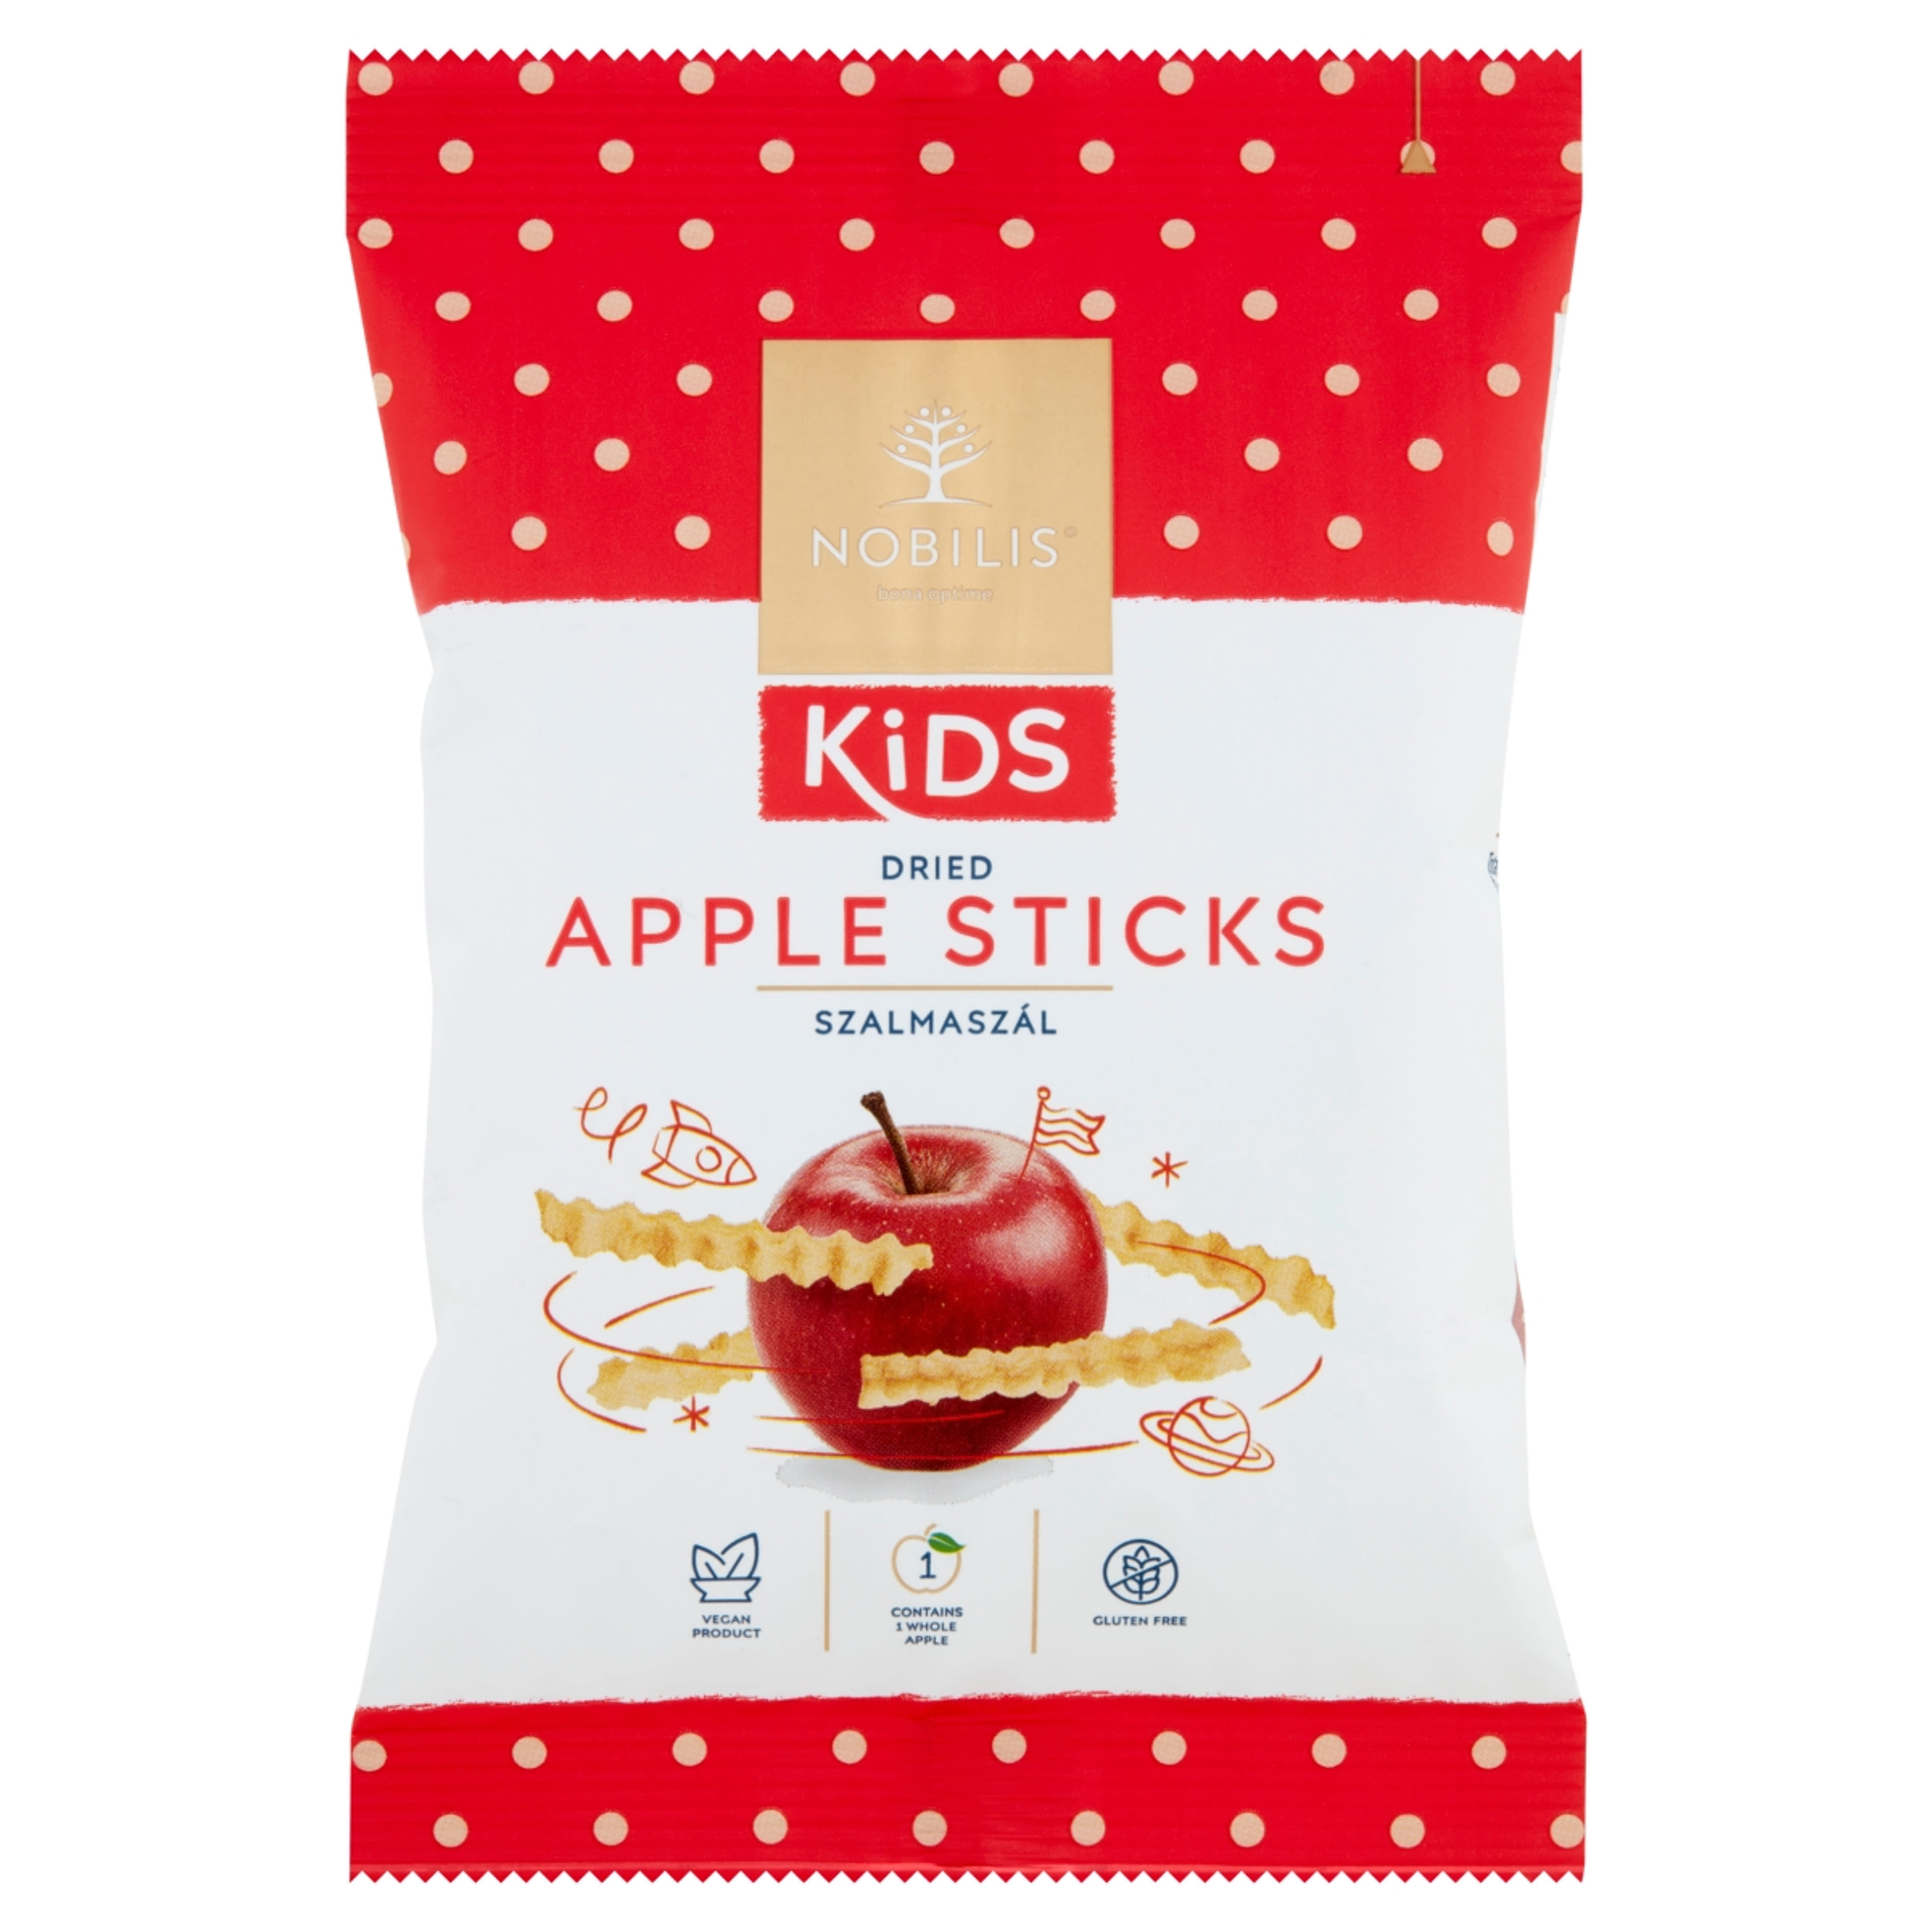 Nobilis Kids szalmaszál szárított, héj nélküli almahasábok - 15 g